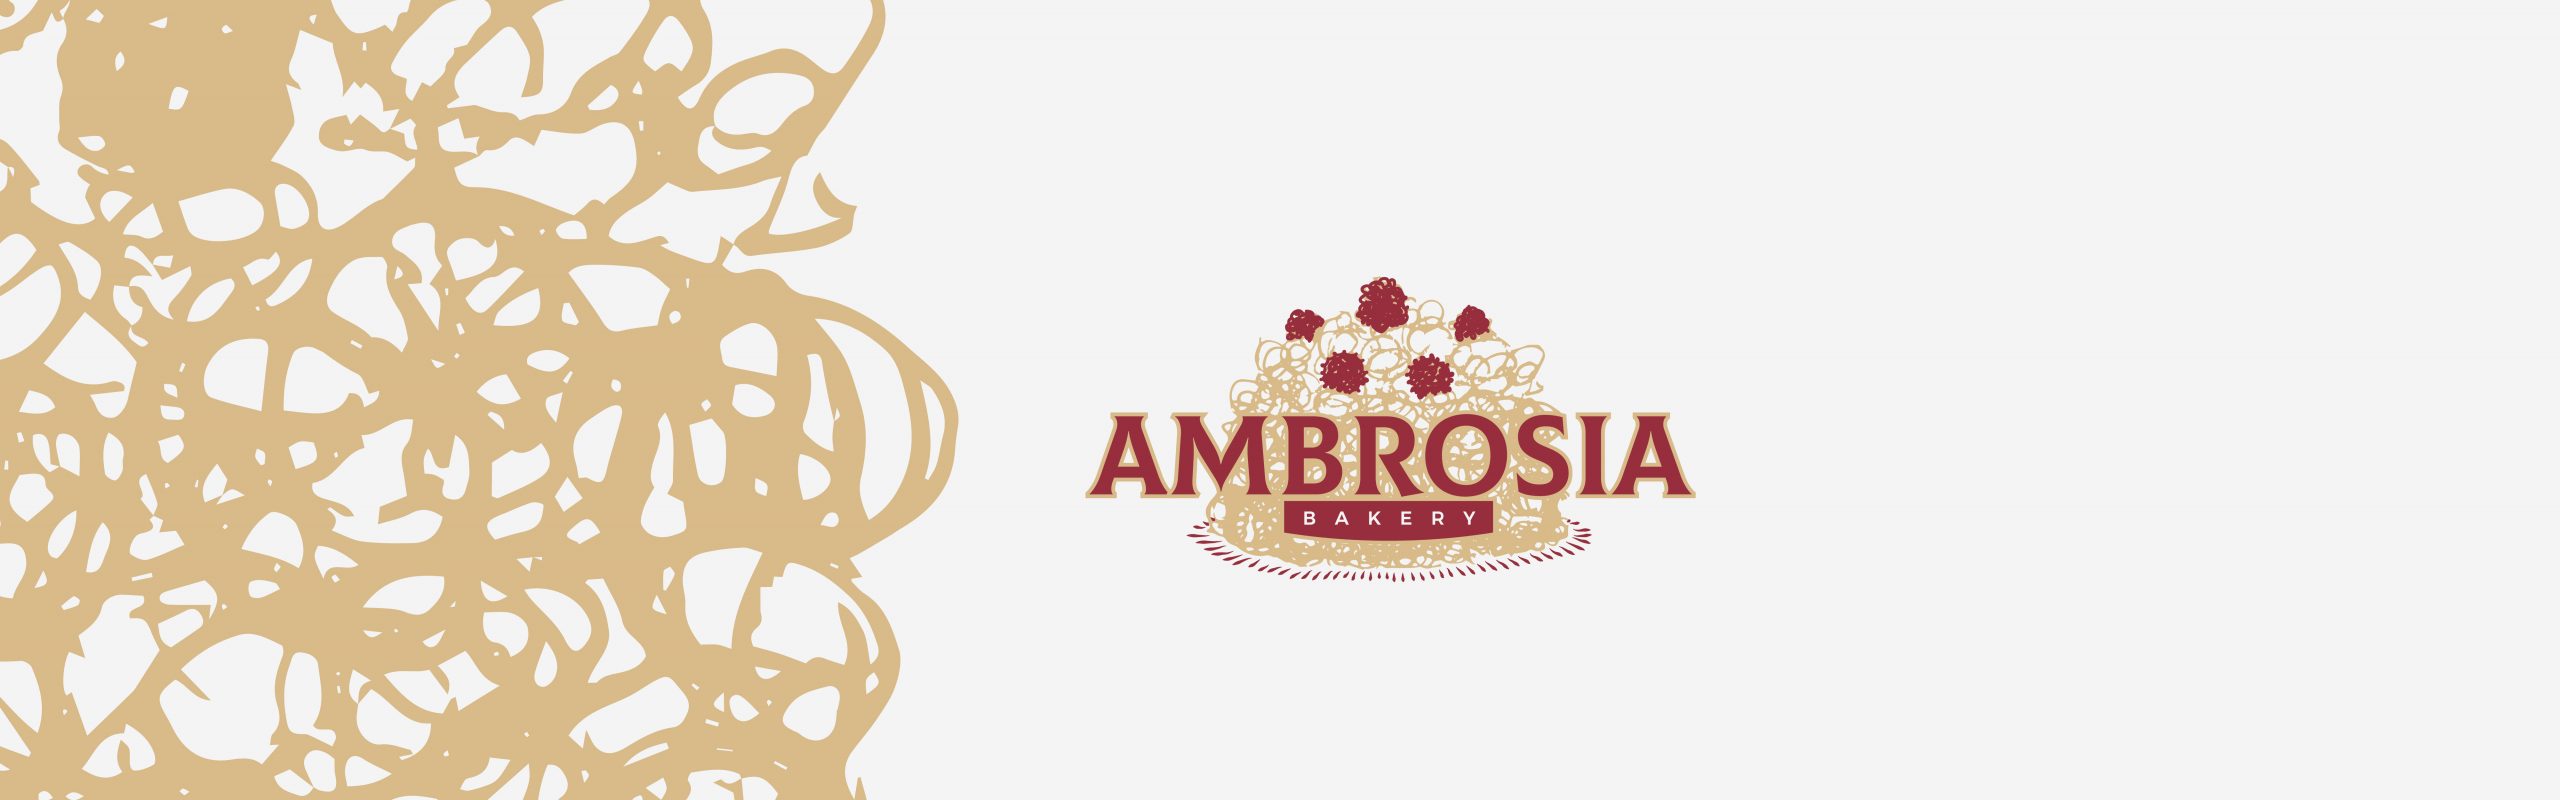 Cakes - Ambrosia Bakery